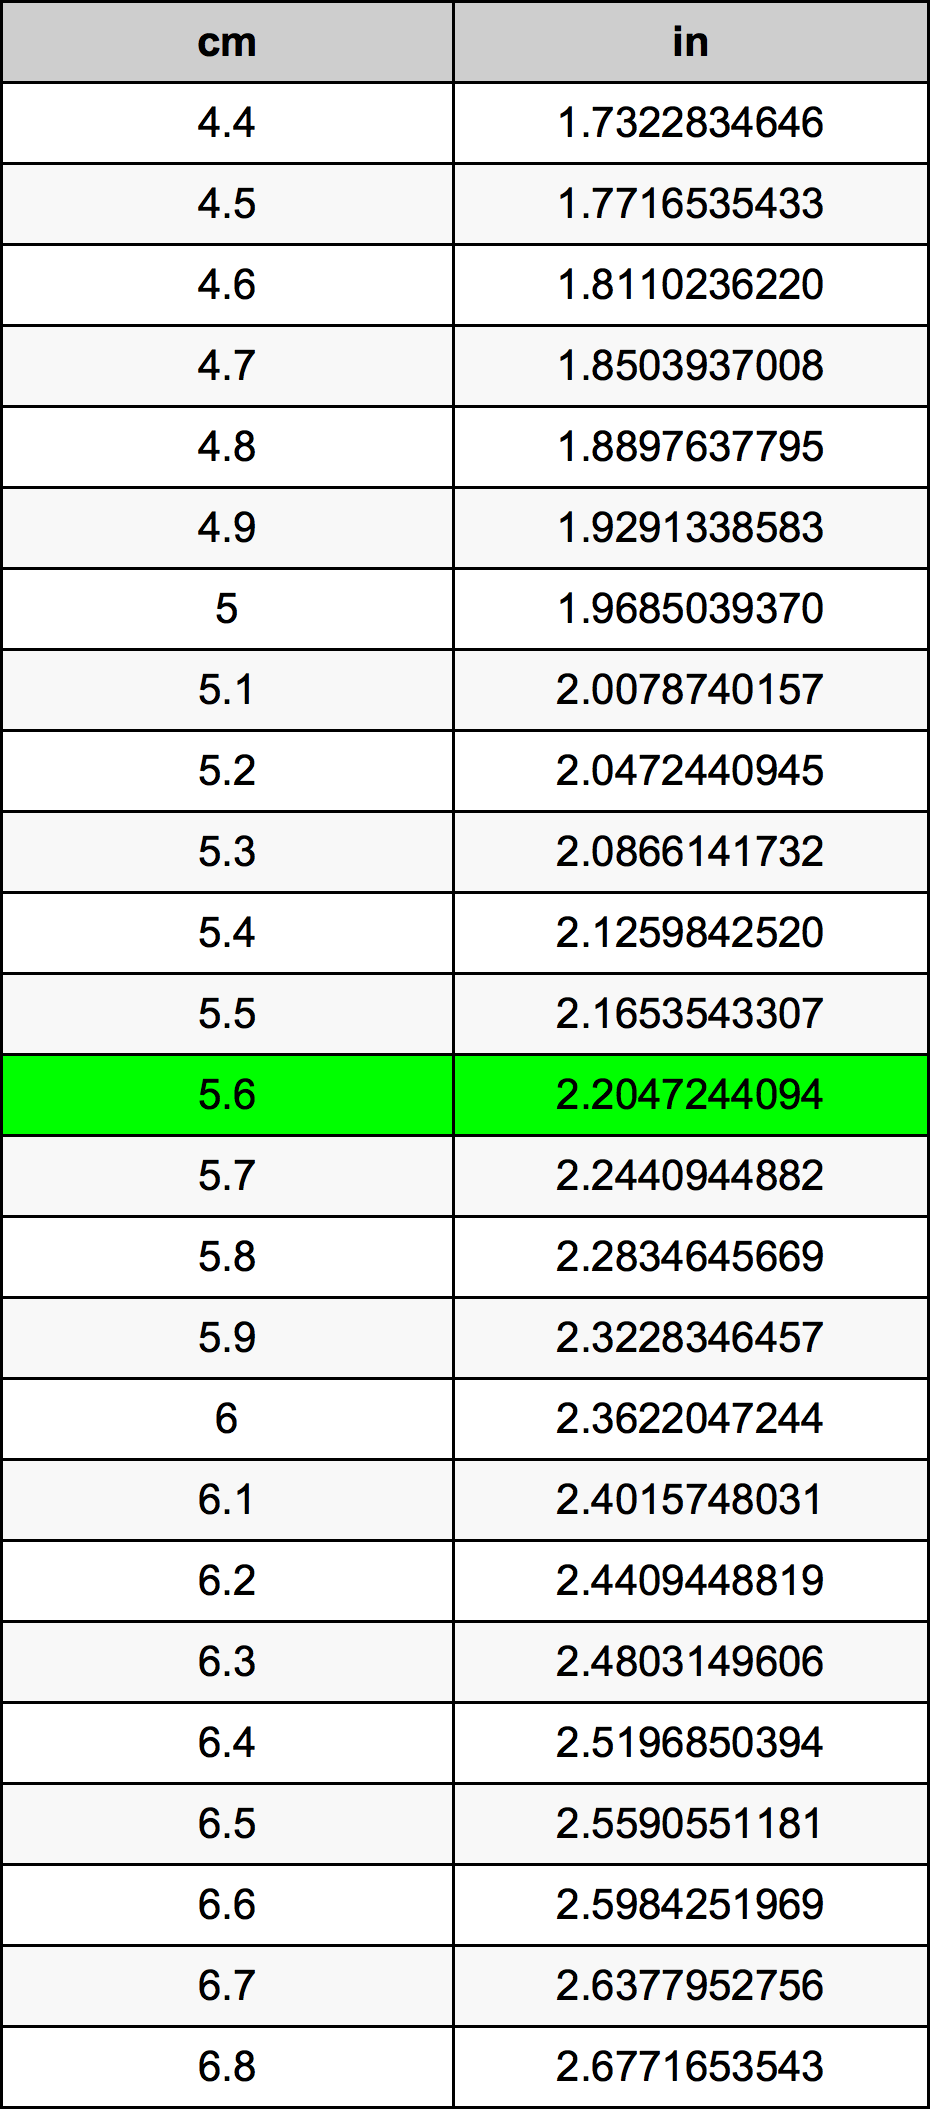 5.6 Centiméter átszámítási táblázat